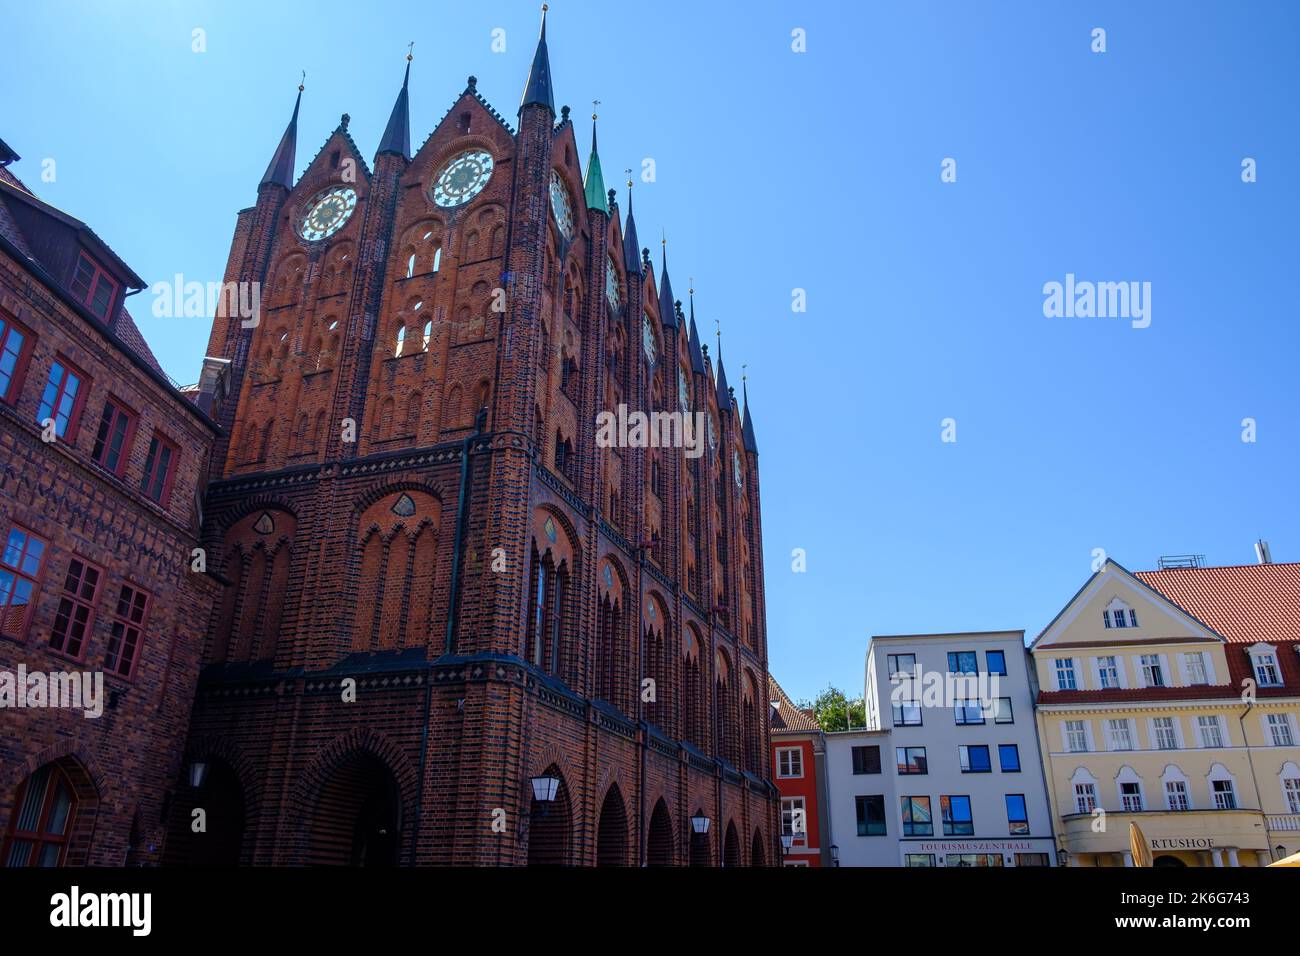 Côté nord de l'hôtel de ville médiéval avec spectacle gothique gables, place du Vieux marché, ville hanséatique de Stralsund, Mecklenburg-Poméranie occidentale, Allemagne. Banque D'Images